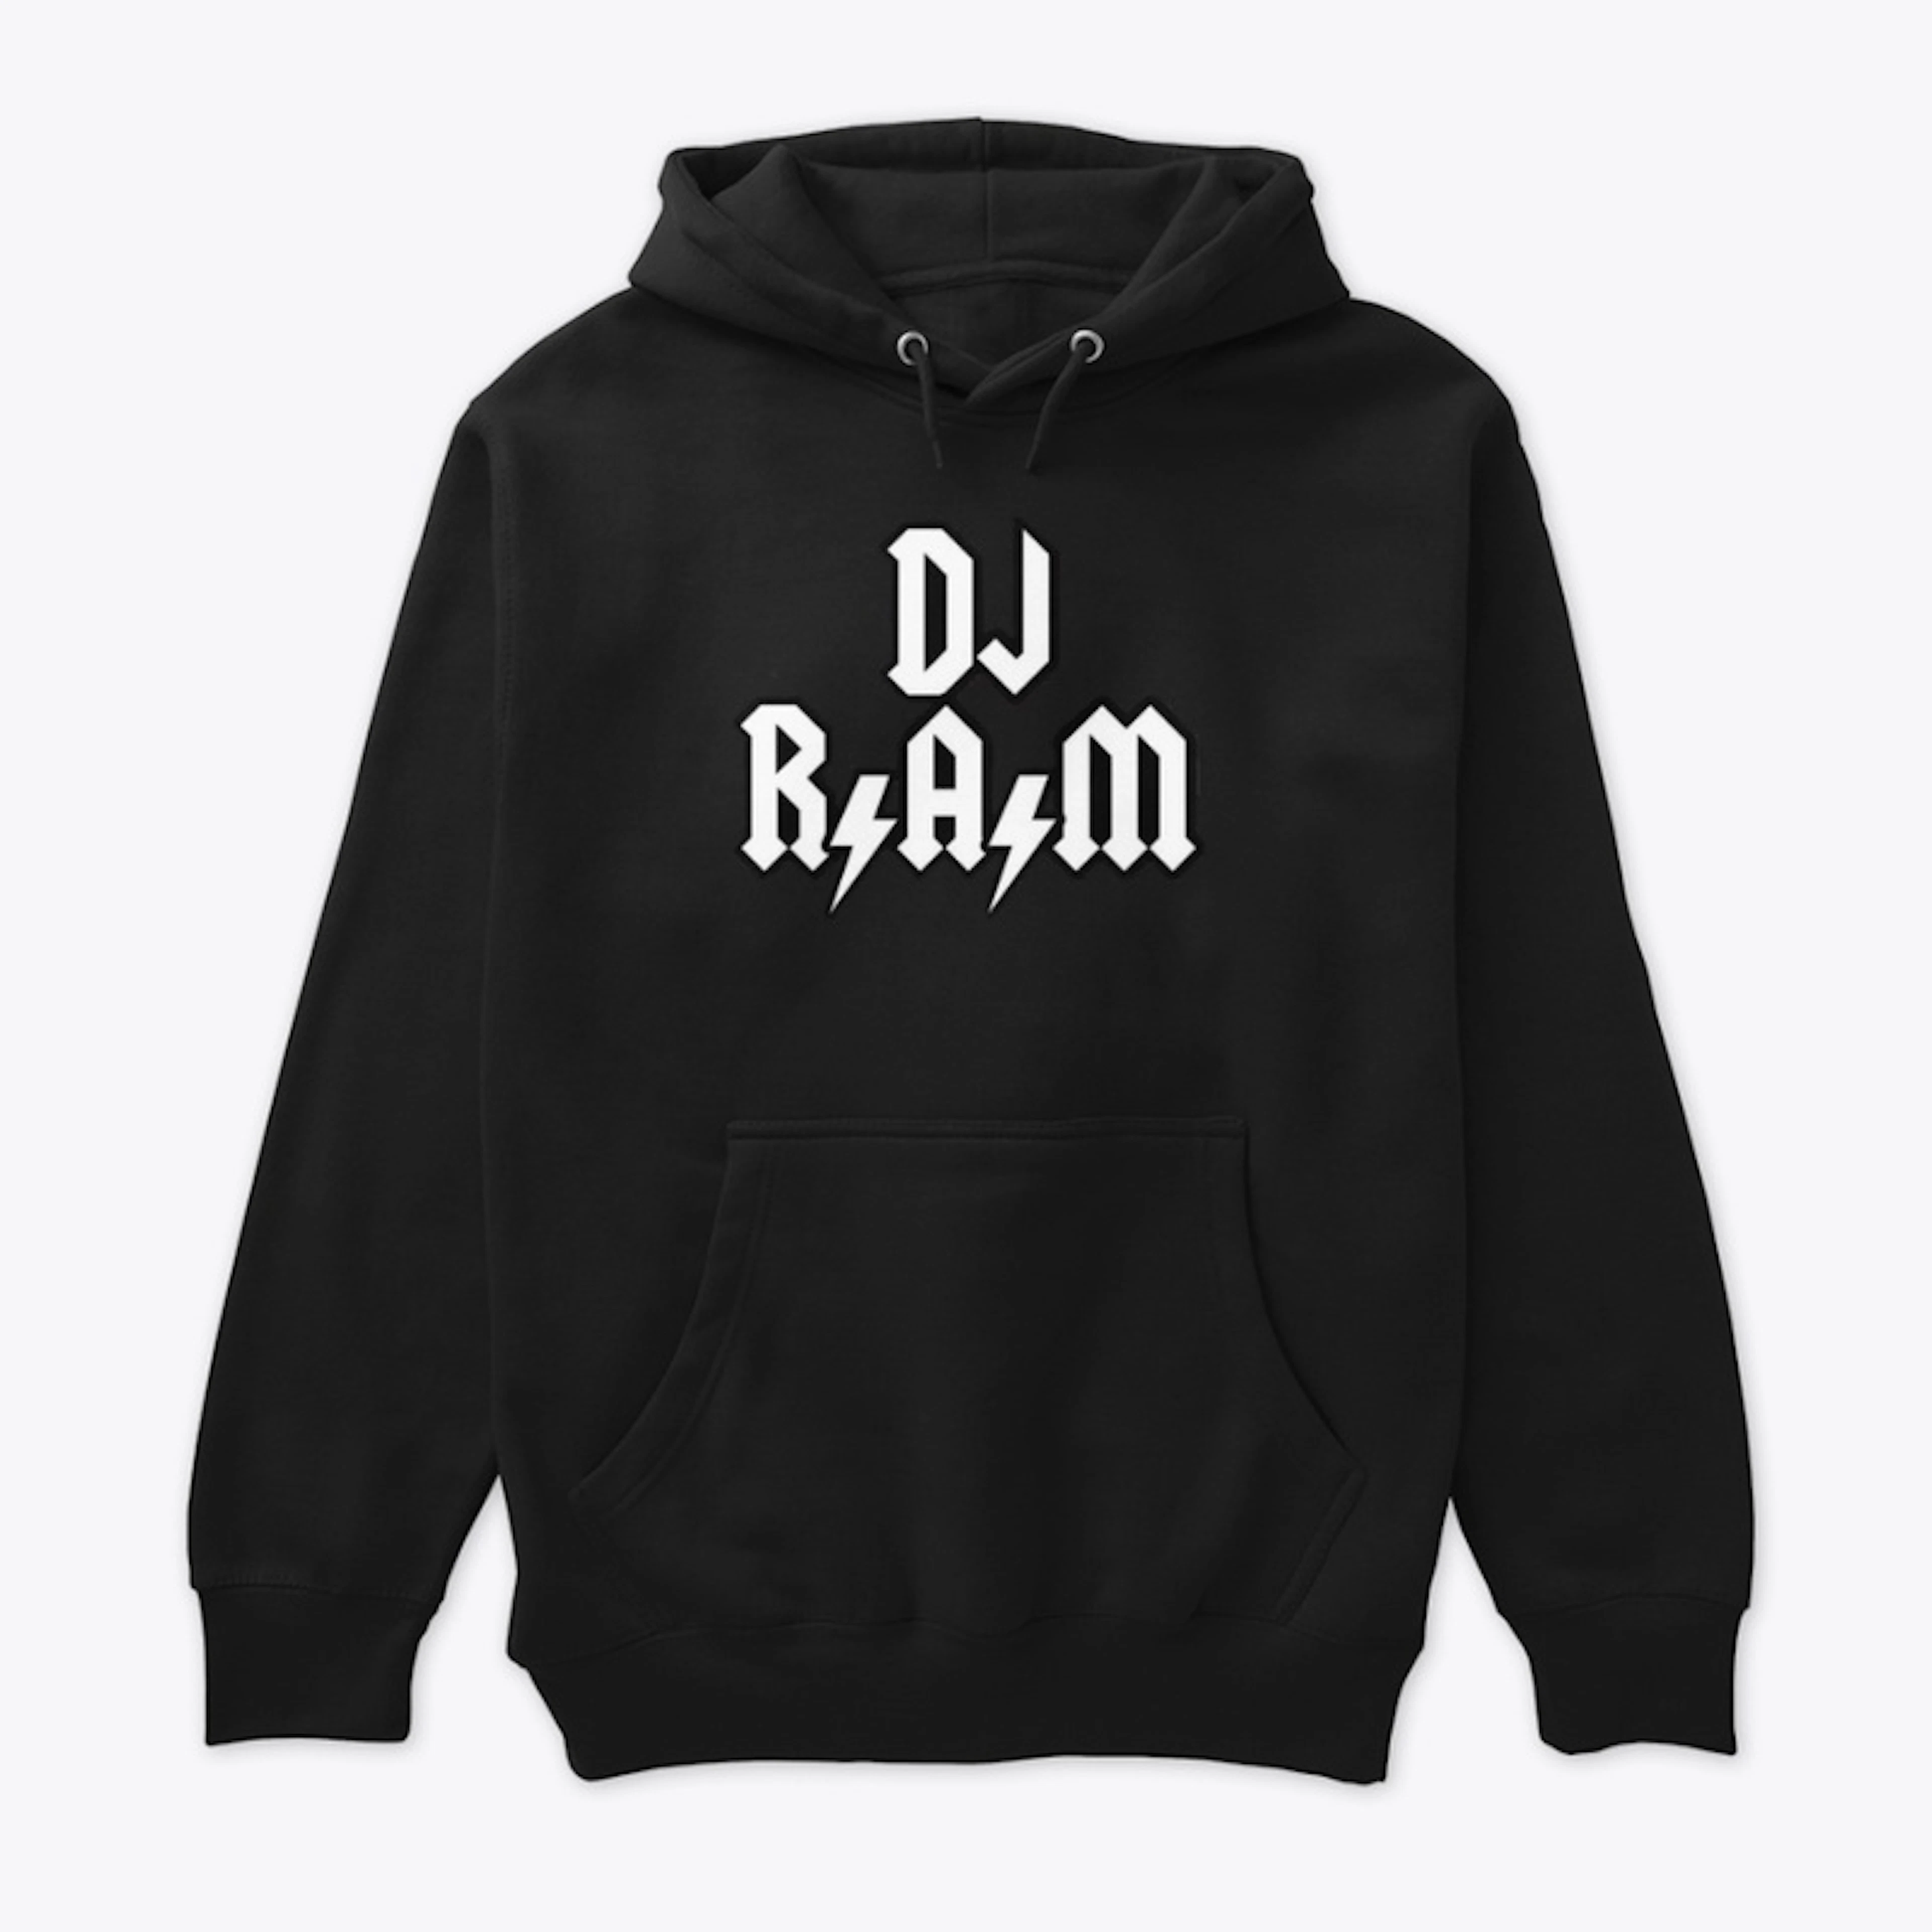 DJ R.A.M M.I.L.F (MAN I LOVE FALL)